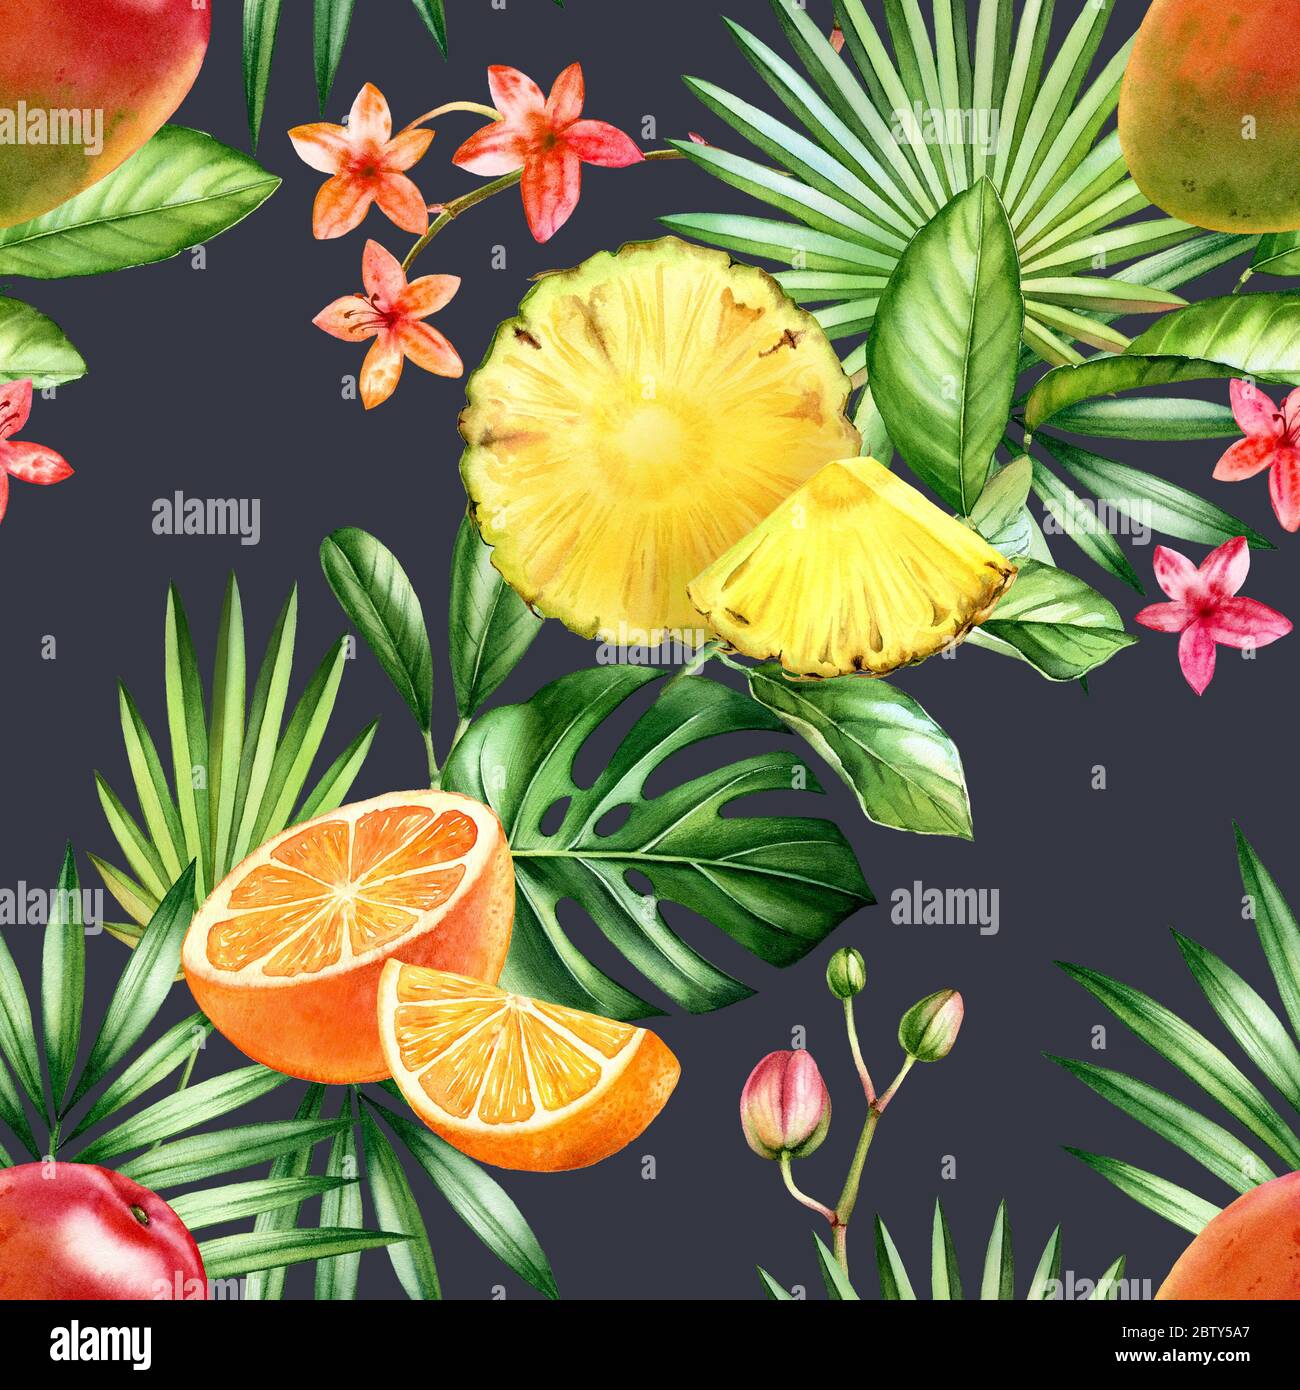 Aquarell tropisch nahtlose Muster. Ananas, Orange, Mangofrüchte. Exotische Früchte und Palmenblätter auf dunkelgrauem Hintergrund. Botanische Illustration für Stockfoto